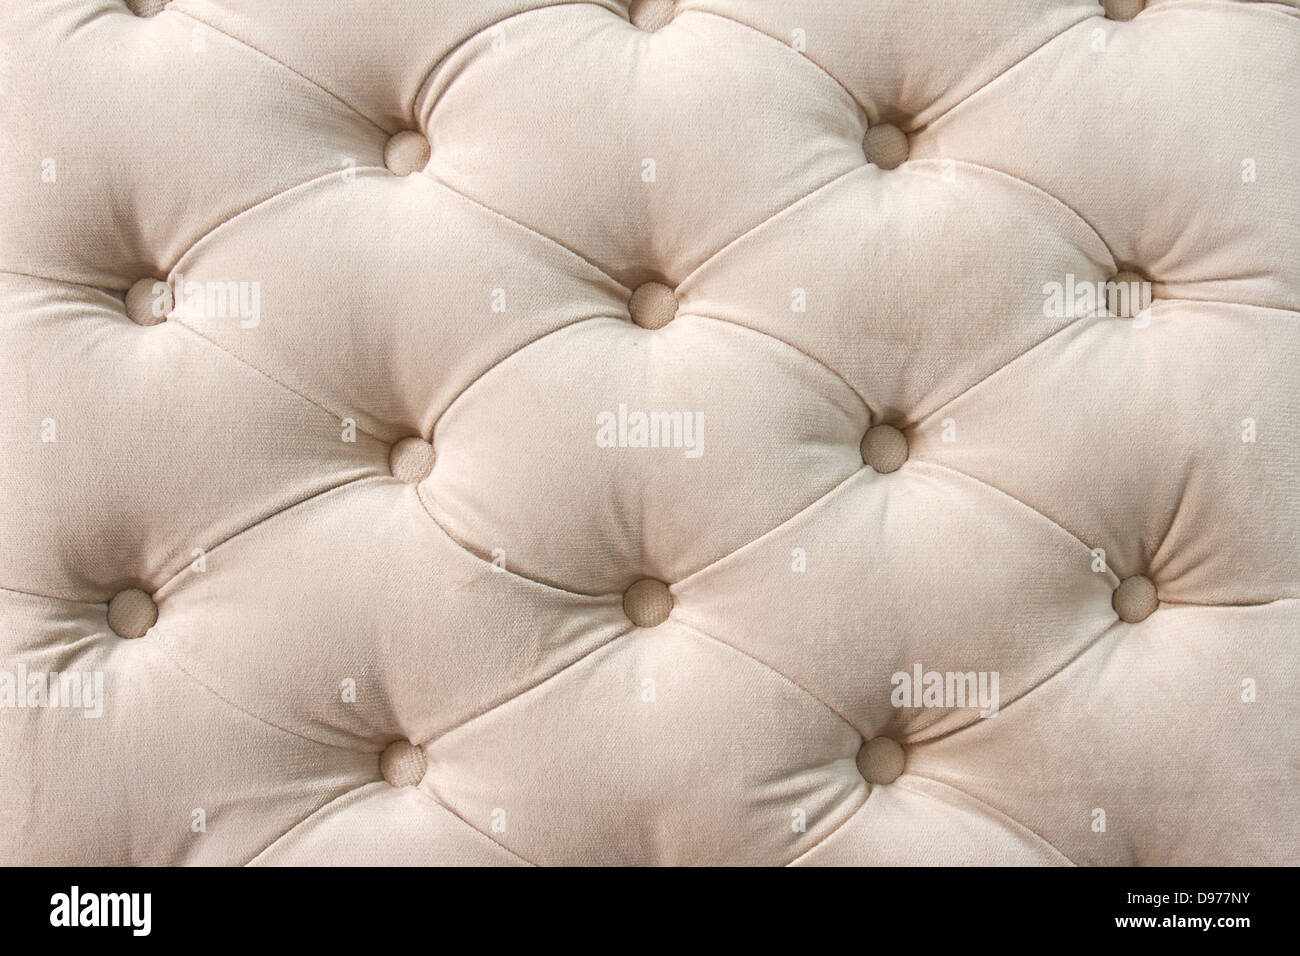 Motif de tissu d'ameublement beige background Banque D'Images